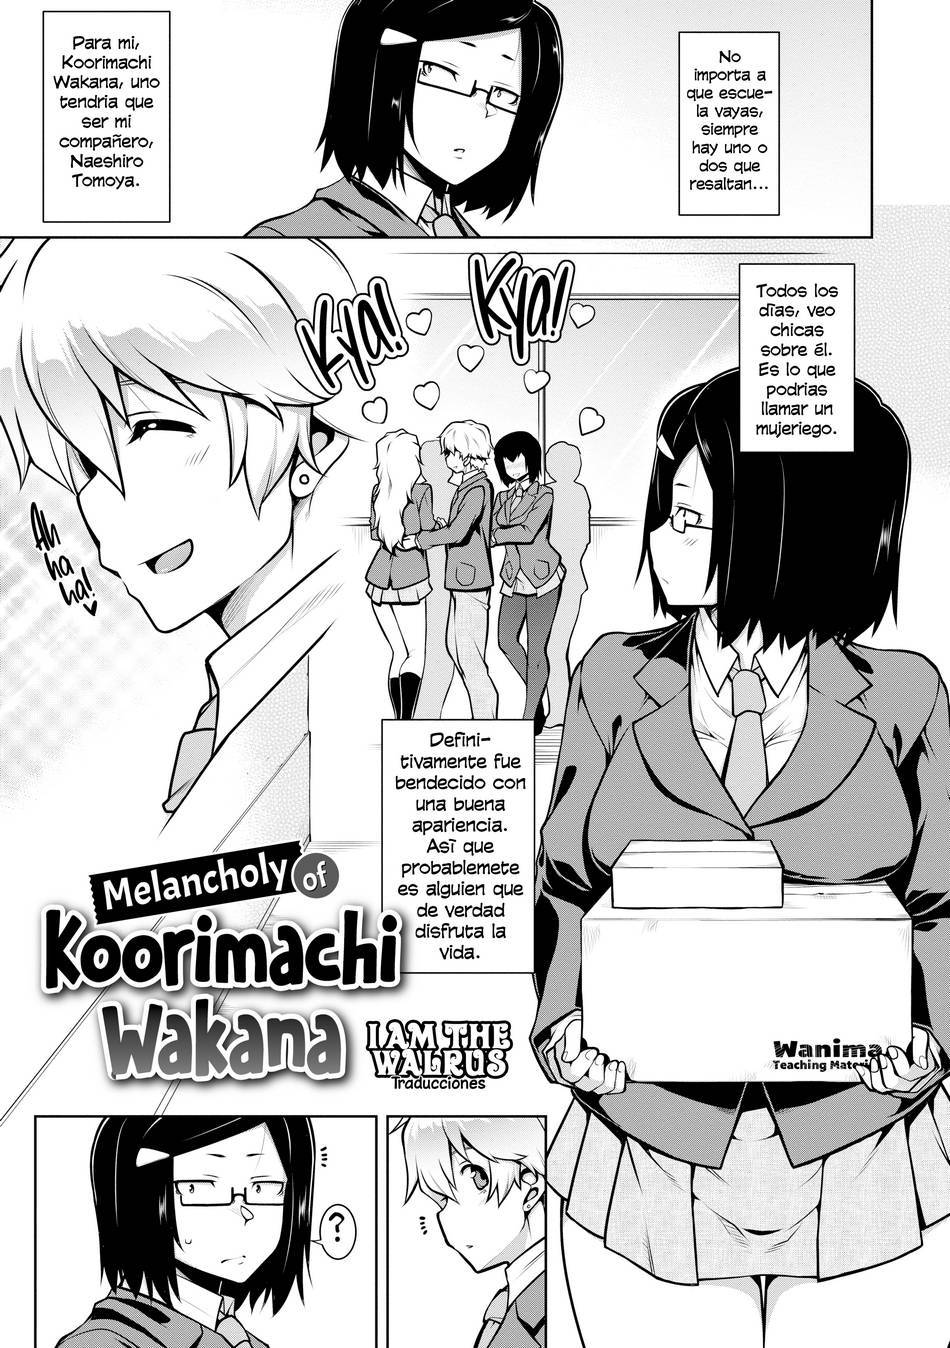 La melancolía de Koorimachi Wakana - Page #1